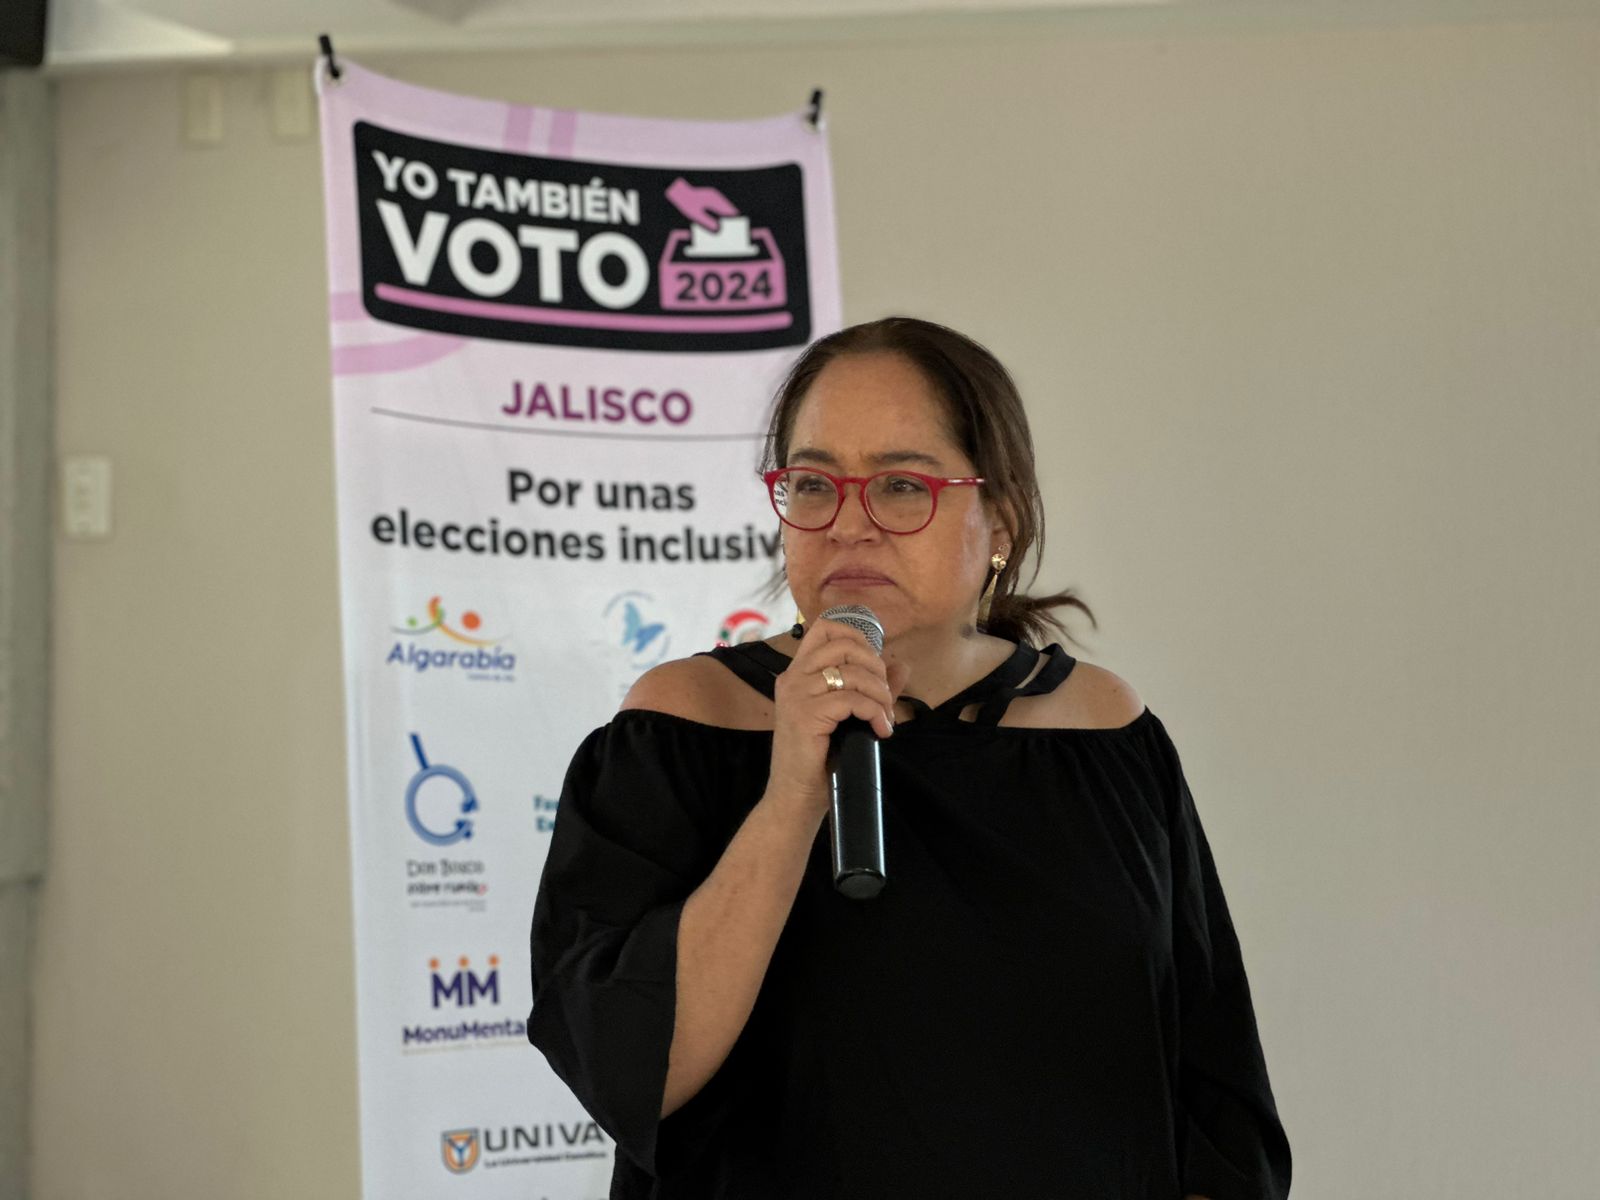 Katia D'Artigues durante la reunión. De #YoTambiénVoto2024 en Jalisco